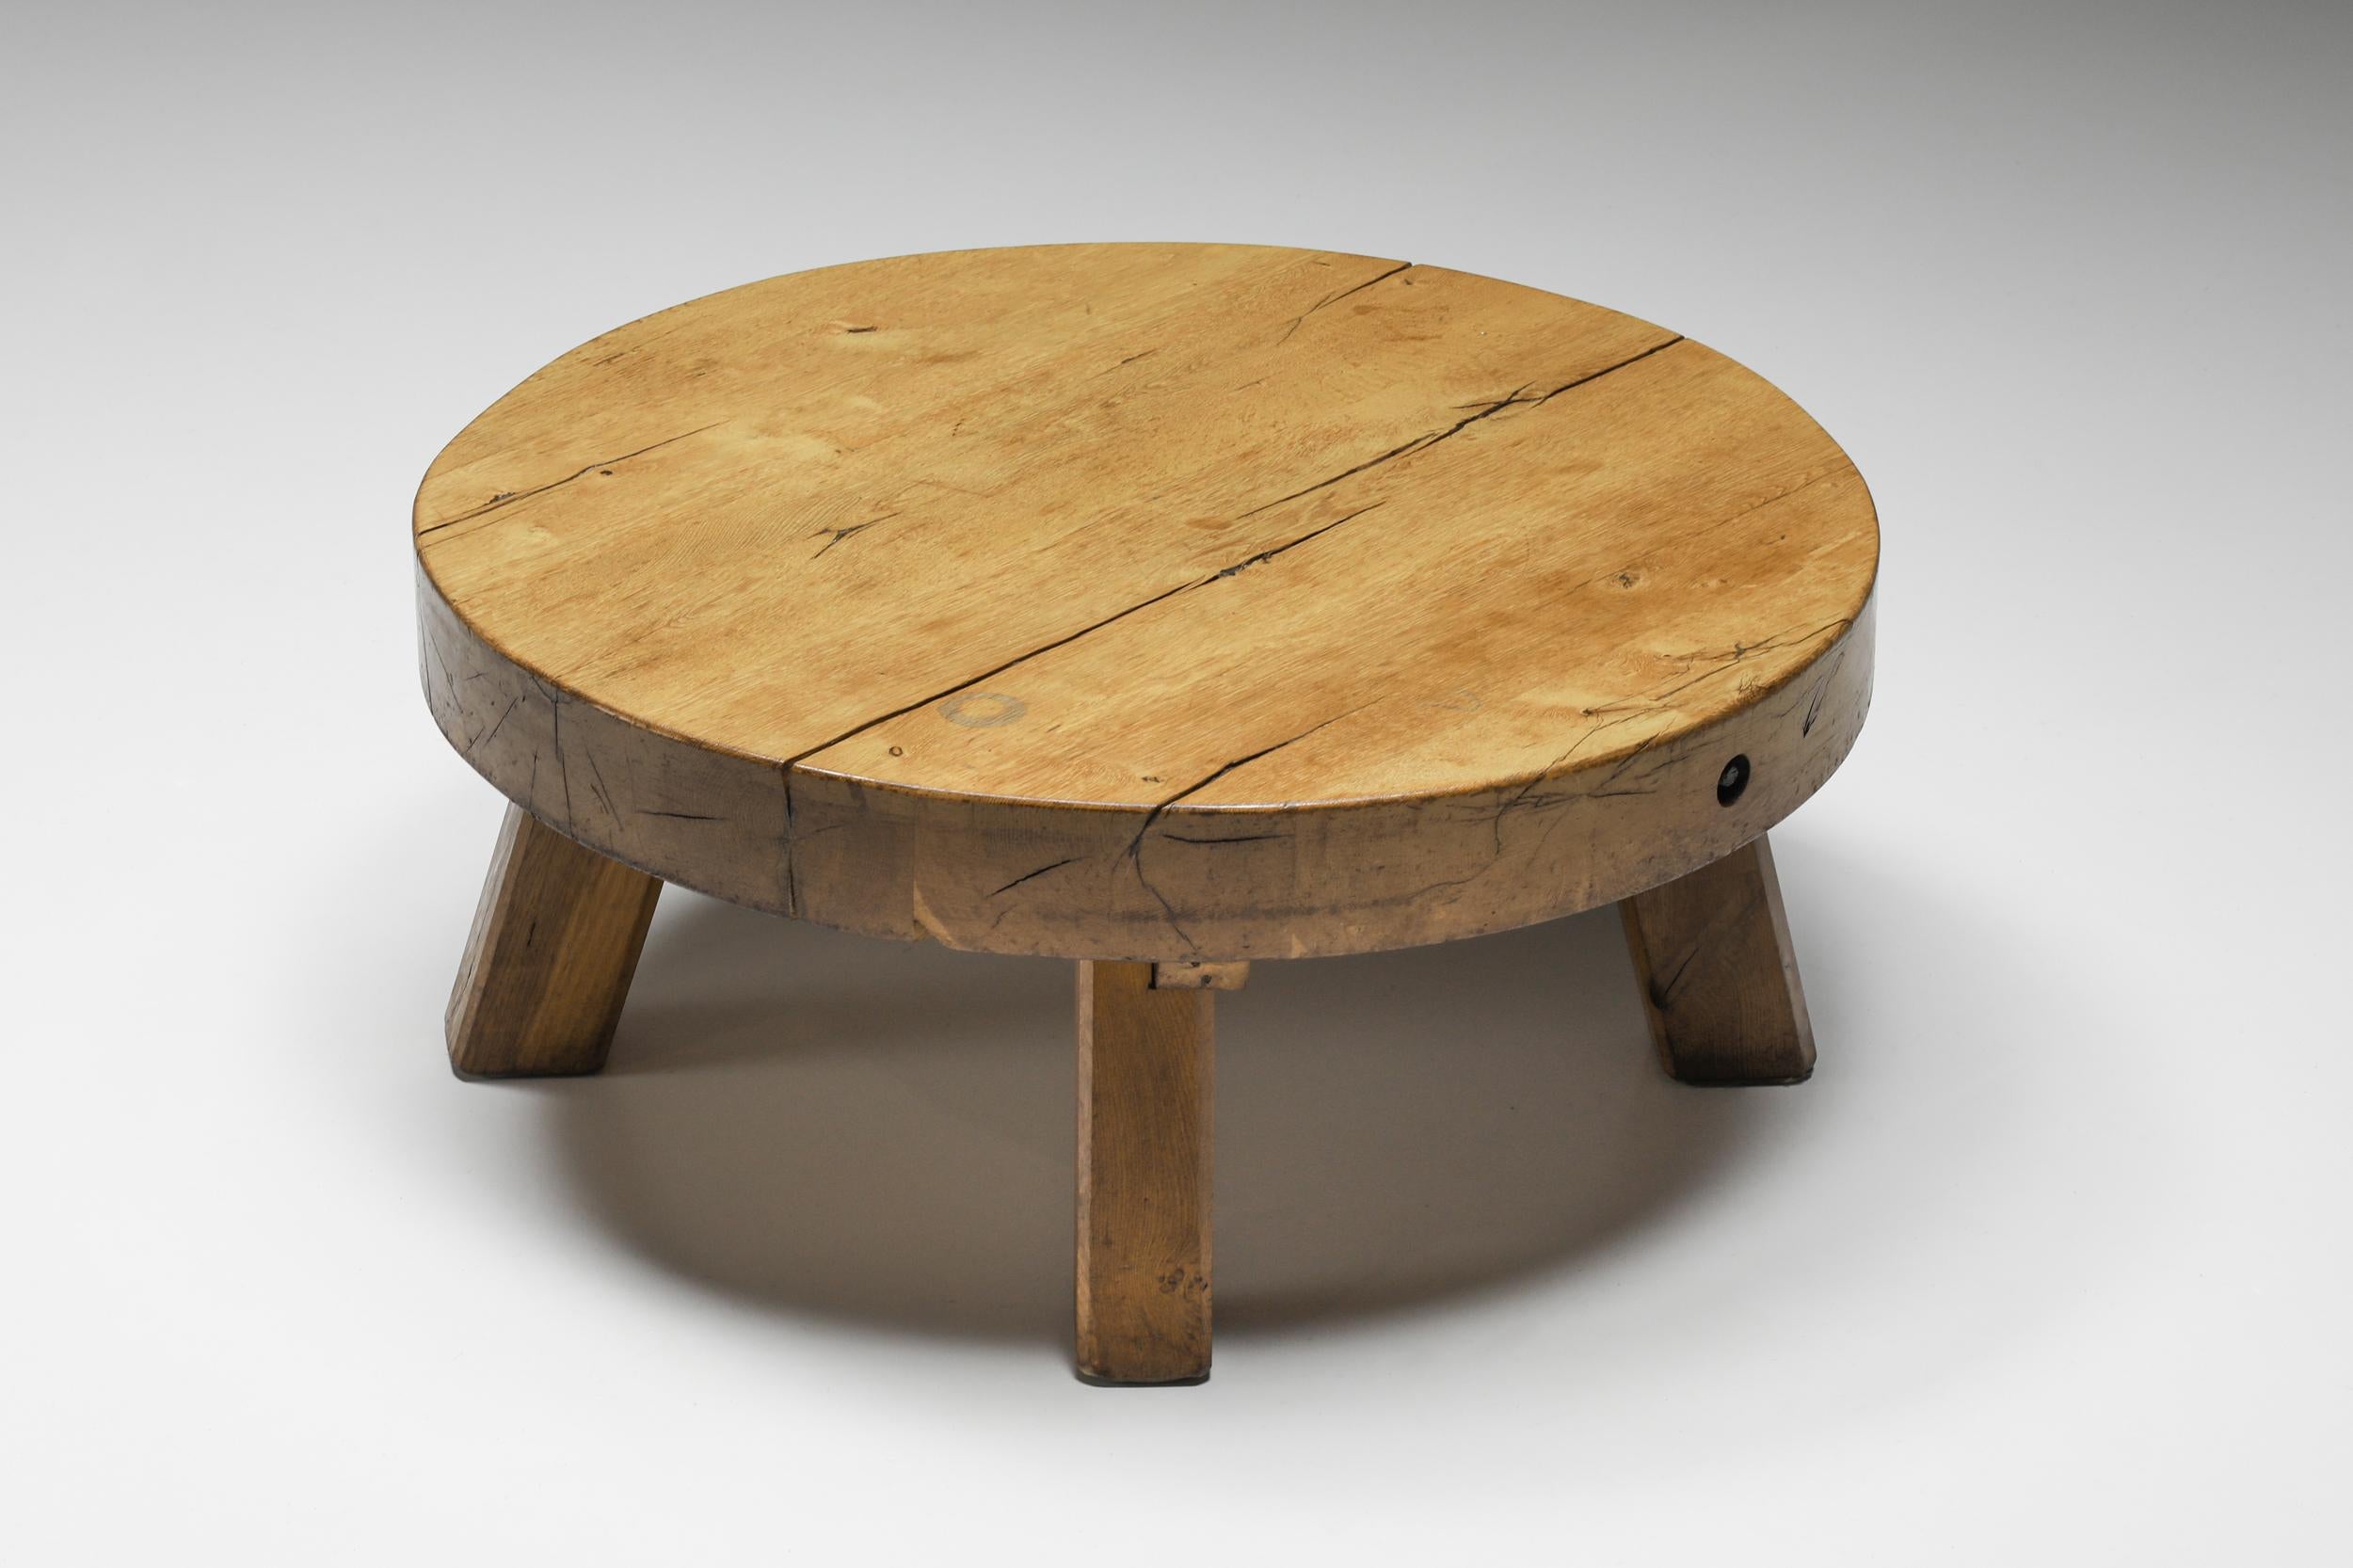 Table basse ronde en bois rustique, France, années 1950.

Cette table basse ronde rustique avec une base à quatre pieds est fabriquée en bois massif. La surface arrondie offre de l'espace pour des objets tels que des magazines et autres